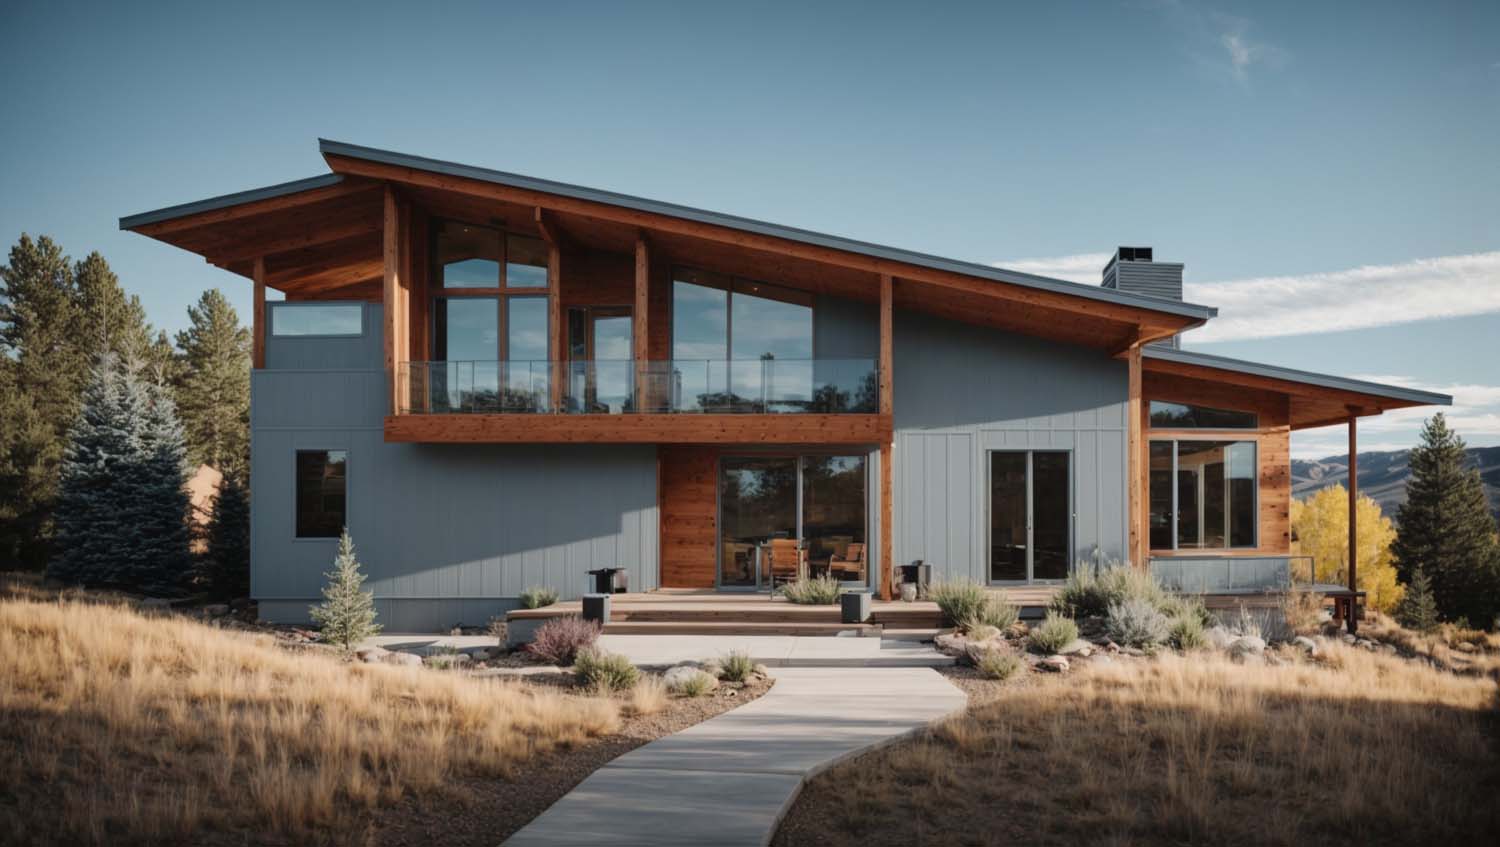 Suburban Modern Farmhouse with Vertical Plank Siding - Siding Colorado in Colorado Springs